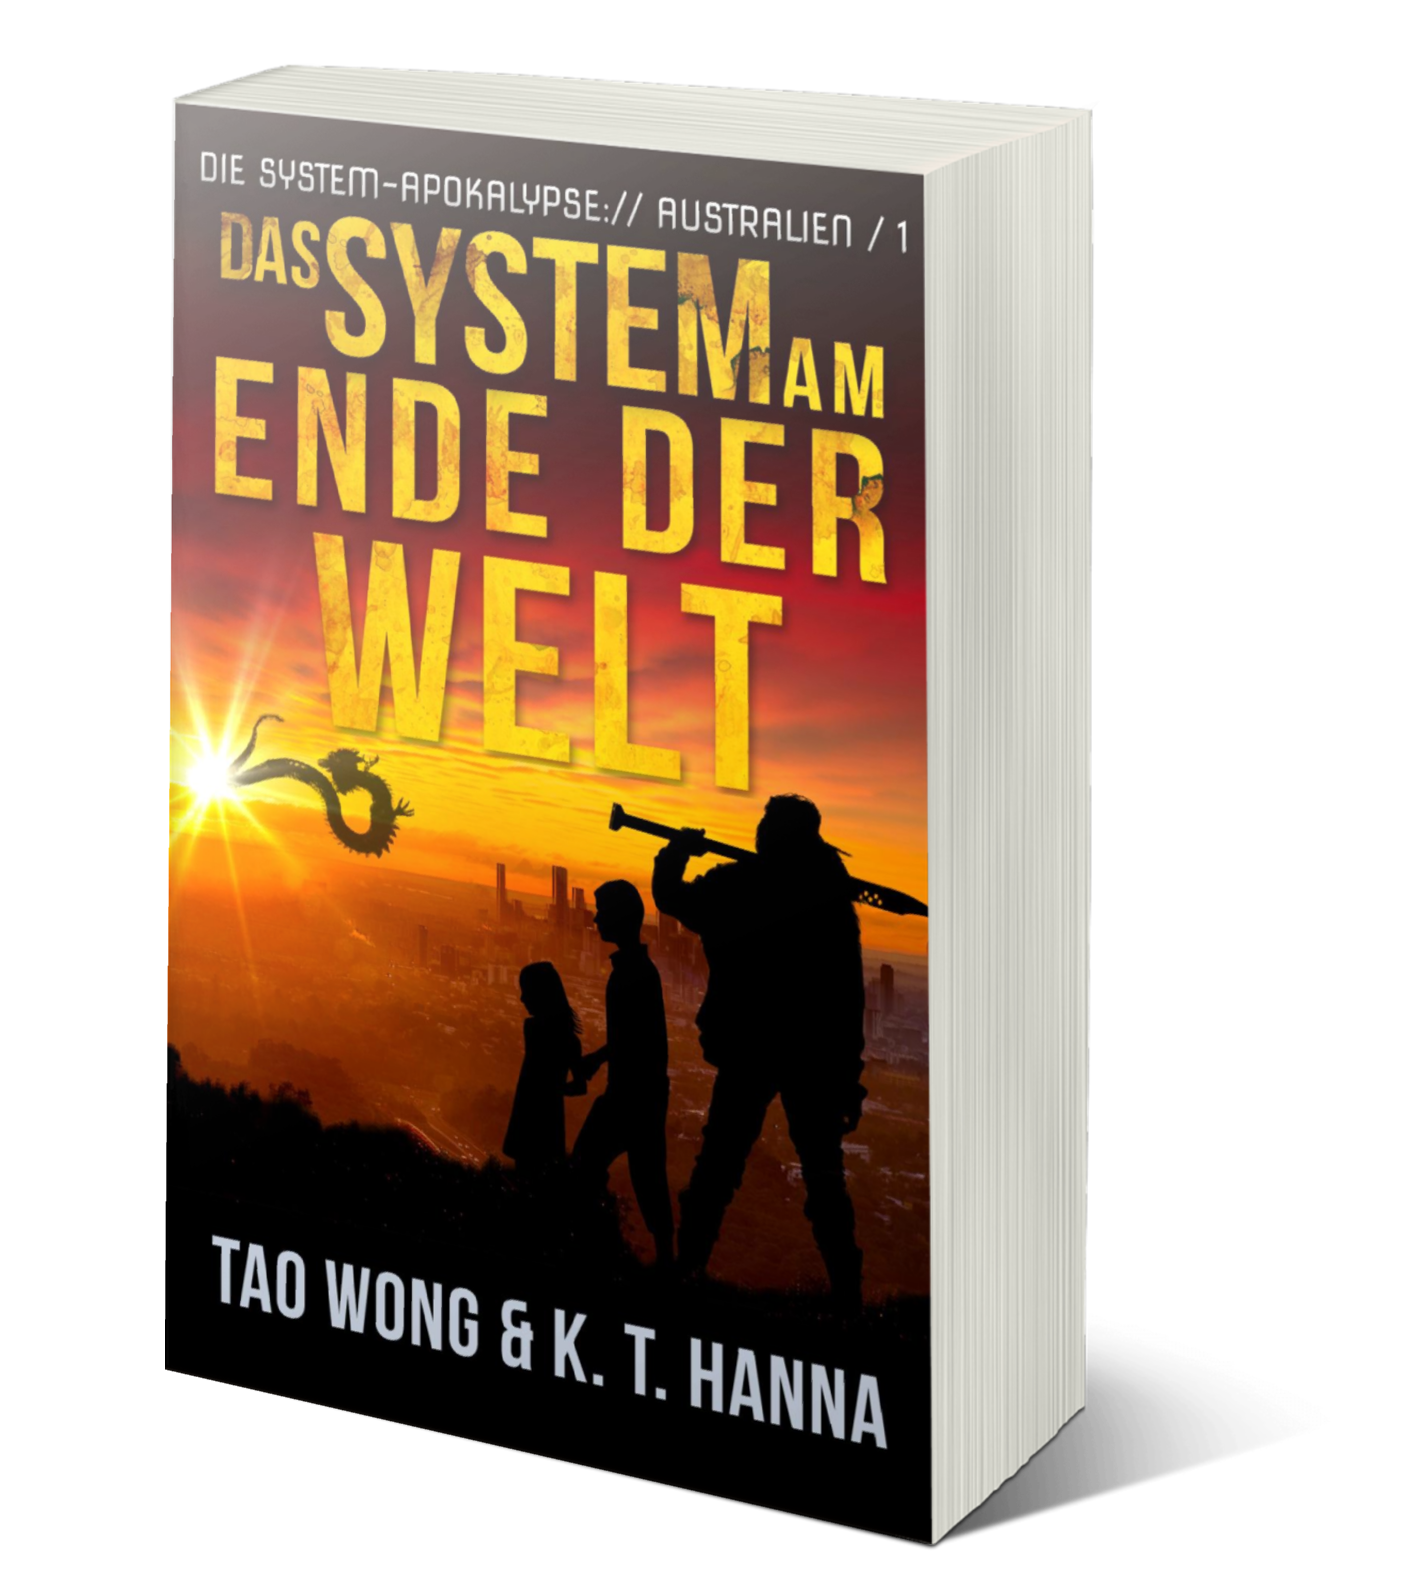 Das System am Ende der Welt (Die System-Apokalypse – Australien #1)